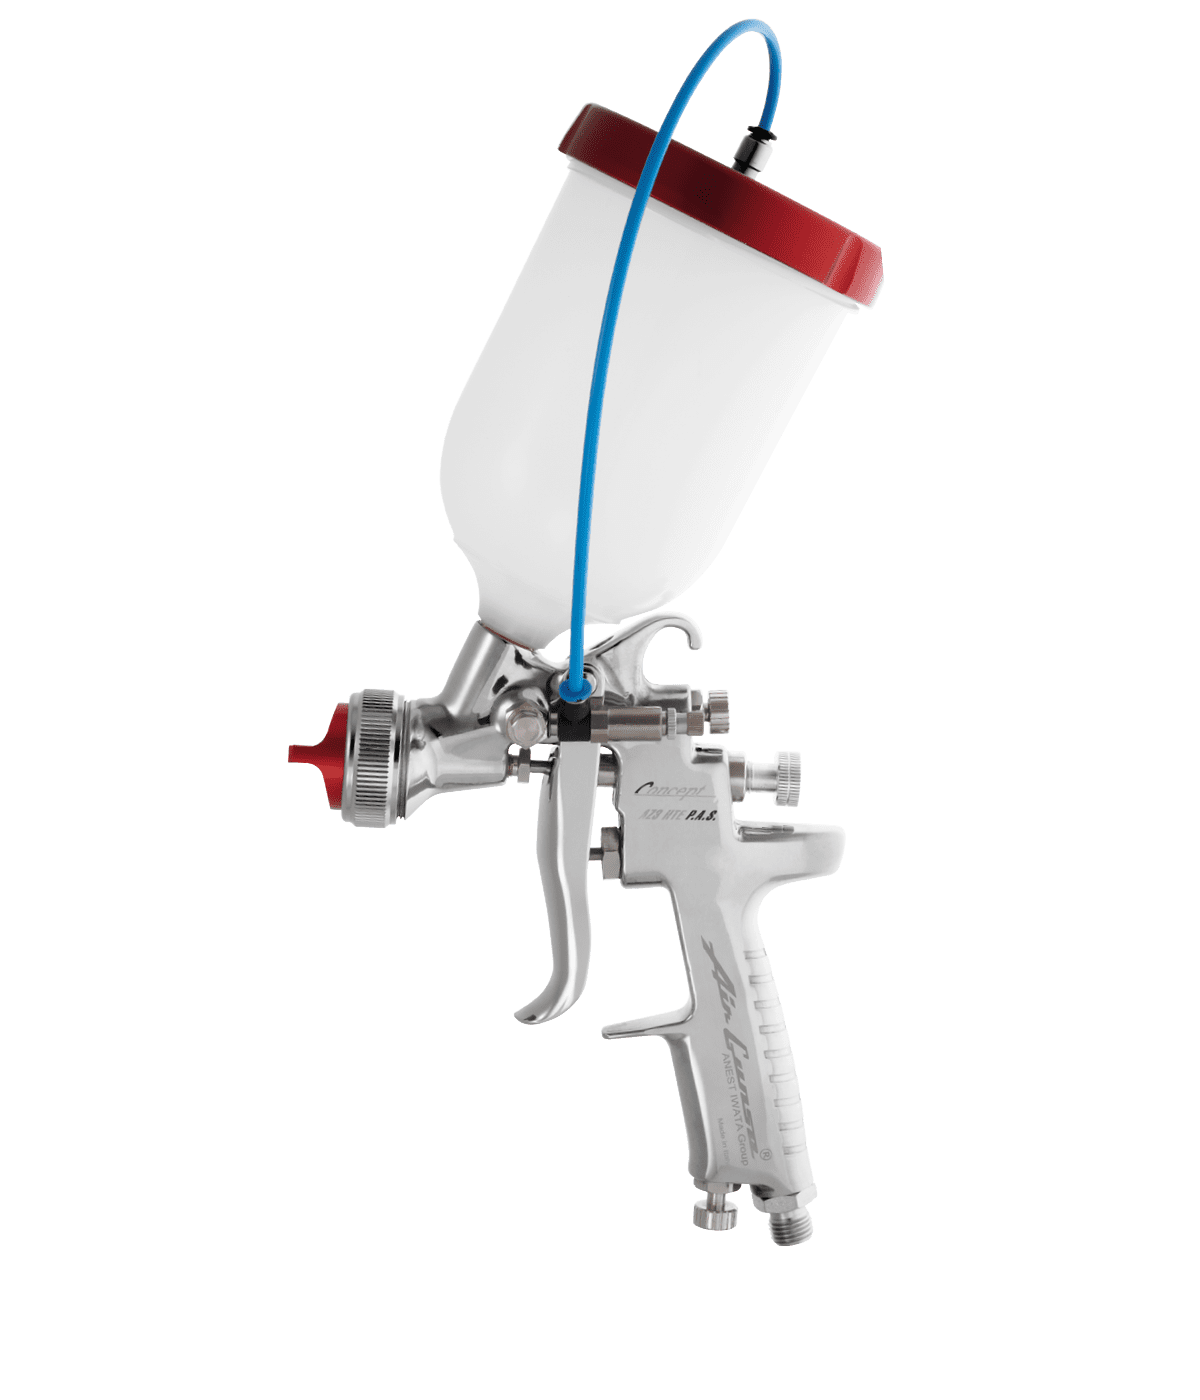 Anest Iwata, Manual Gravity Fed Spray Guns, W400 G